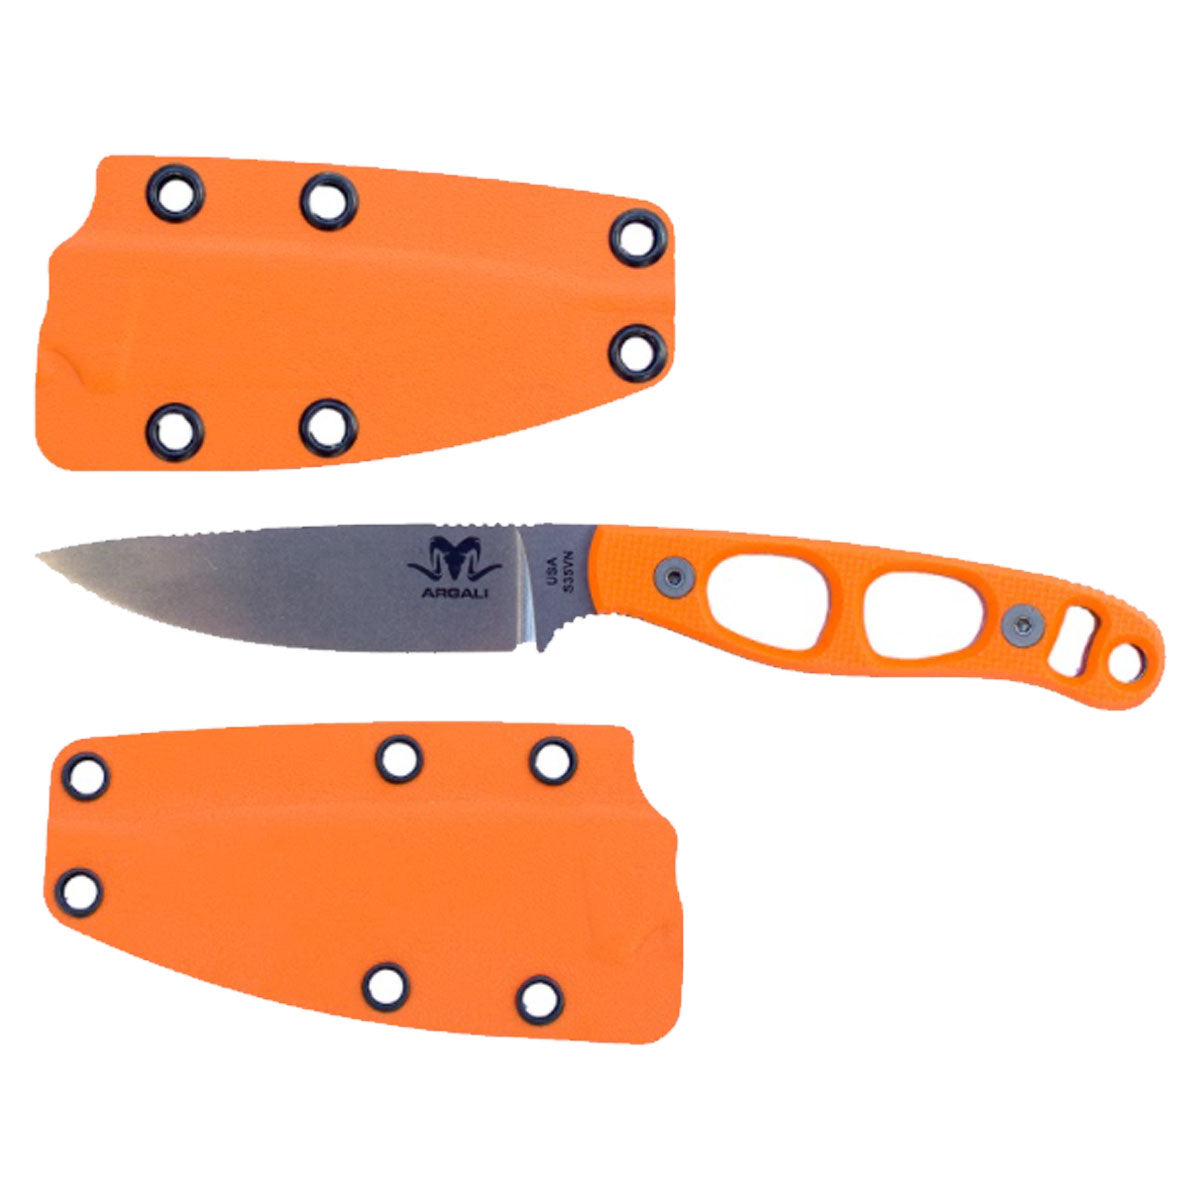 Argali Carbon Knife Orange